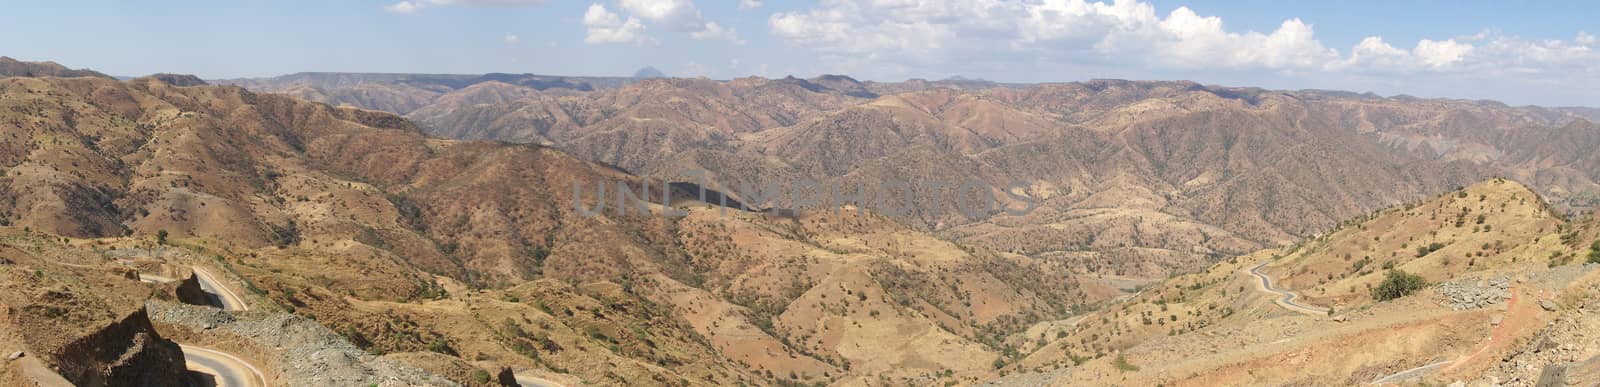 Landscape close to Axum, Ethiopia, Africa